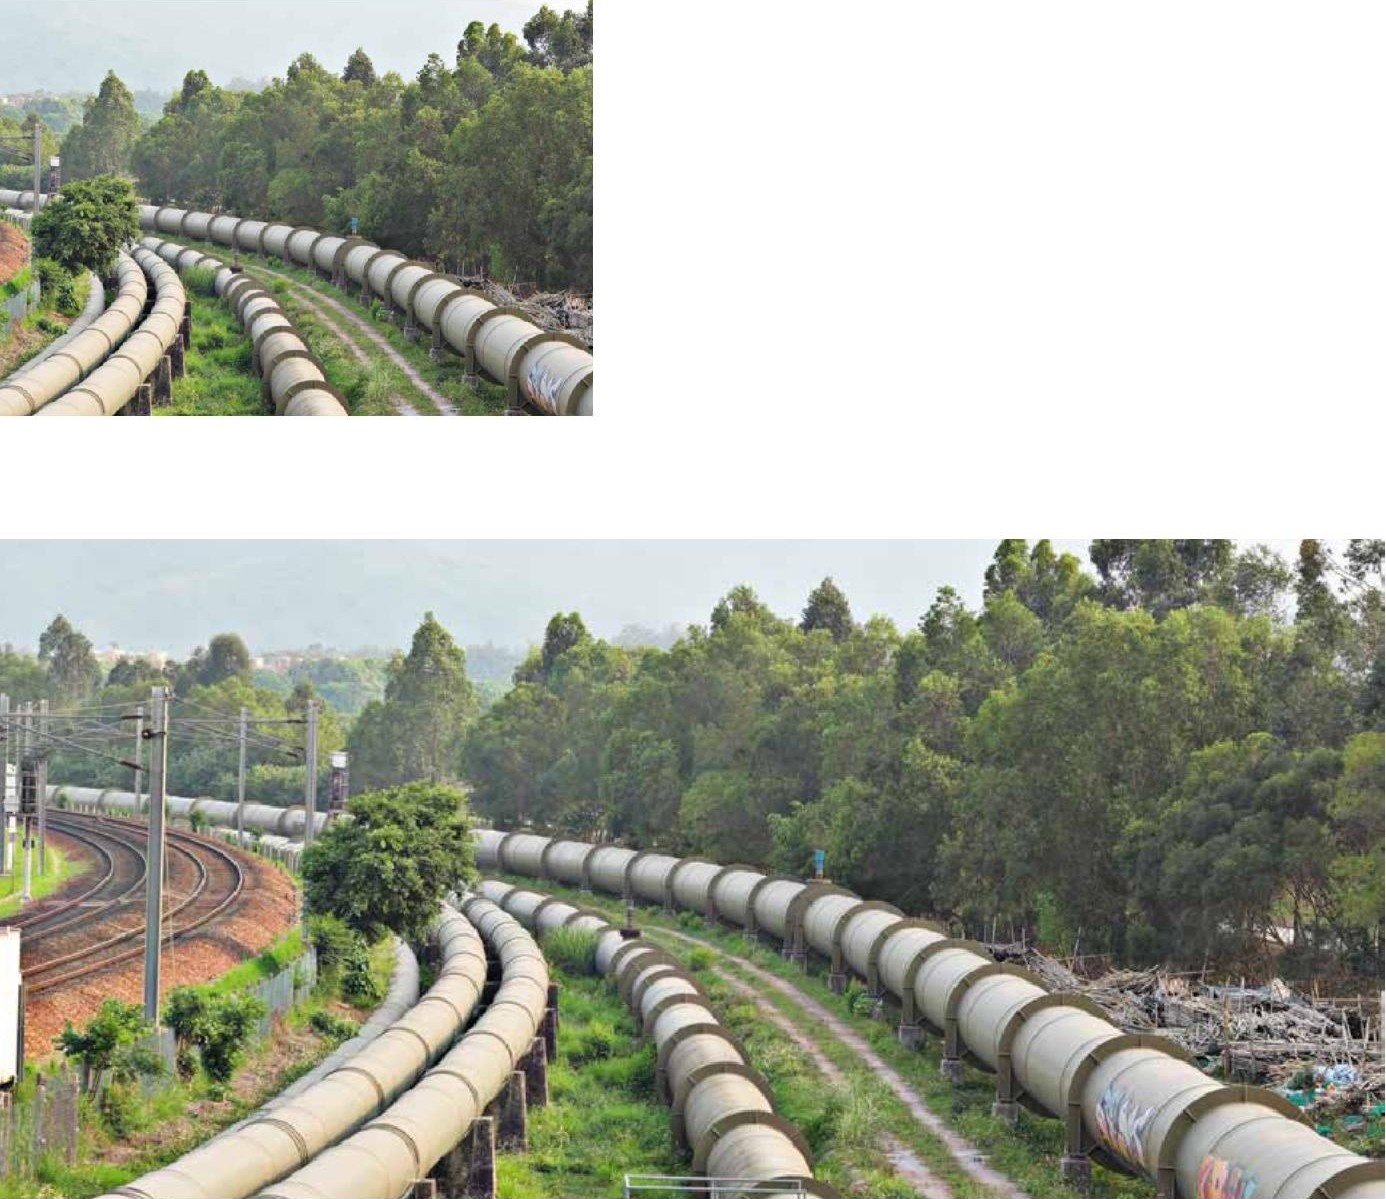 BTC Petrol Boru Hattı Projesi Tank Çiftliği Boru Hattı ile Soğutma Suyu Getirilmesi